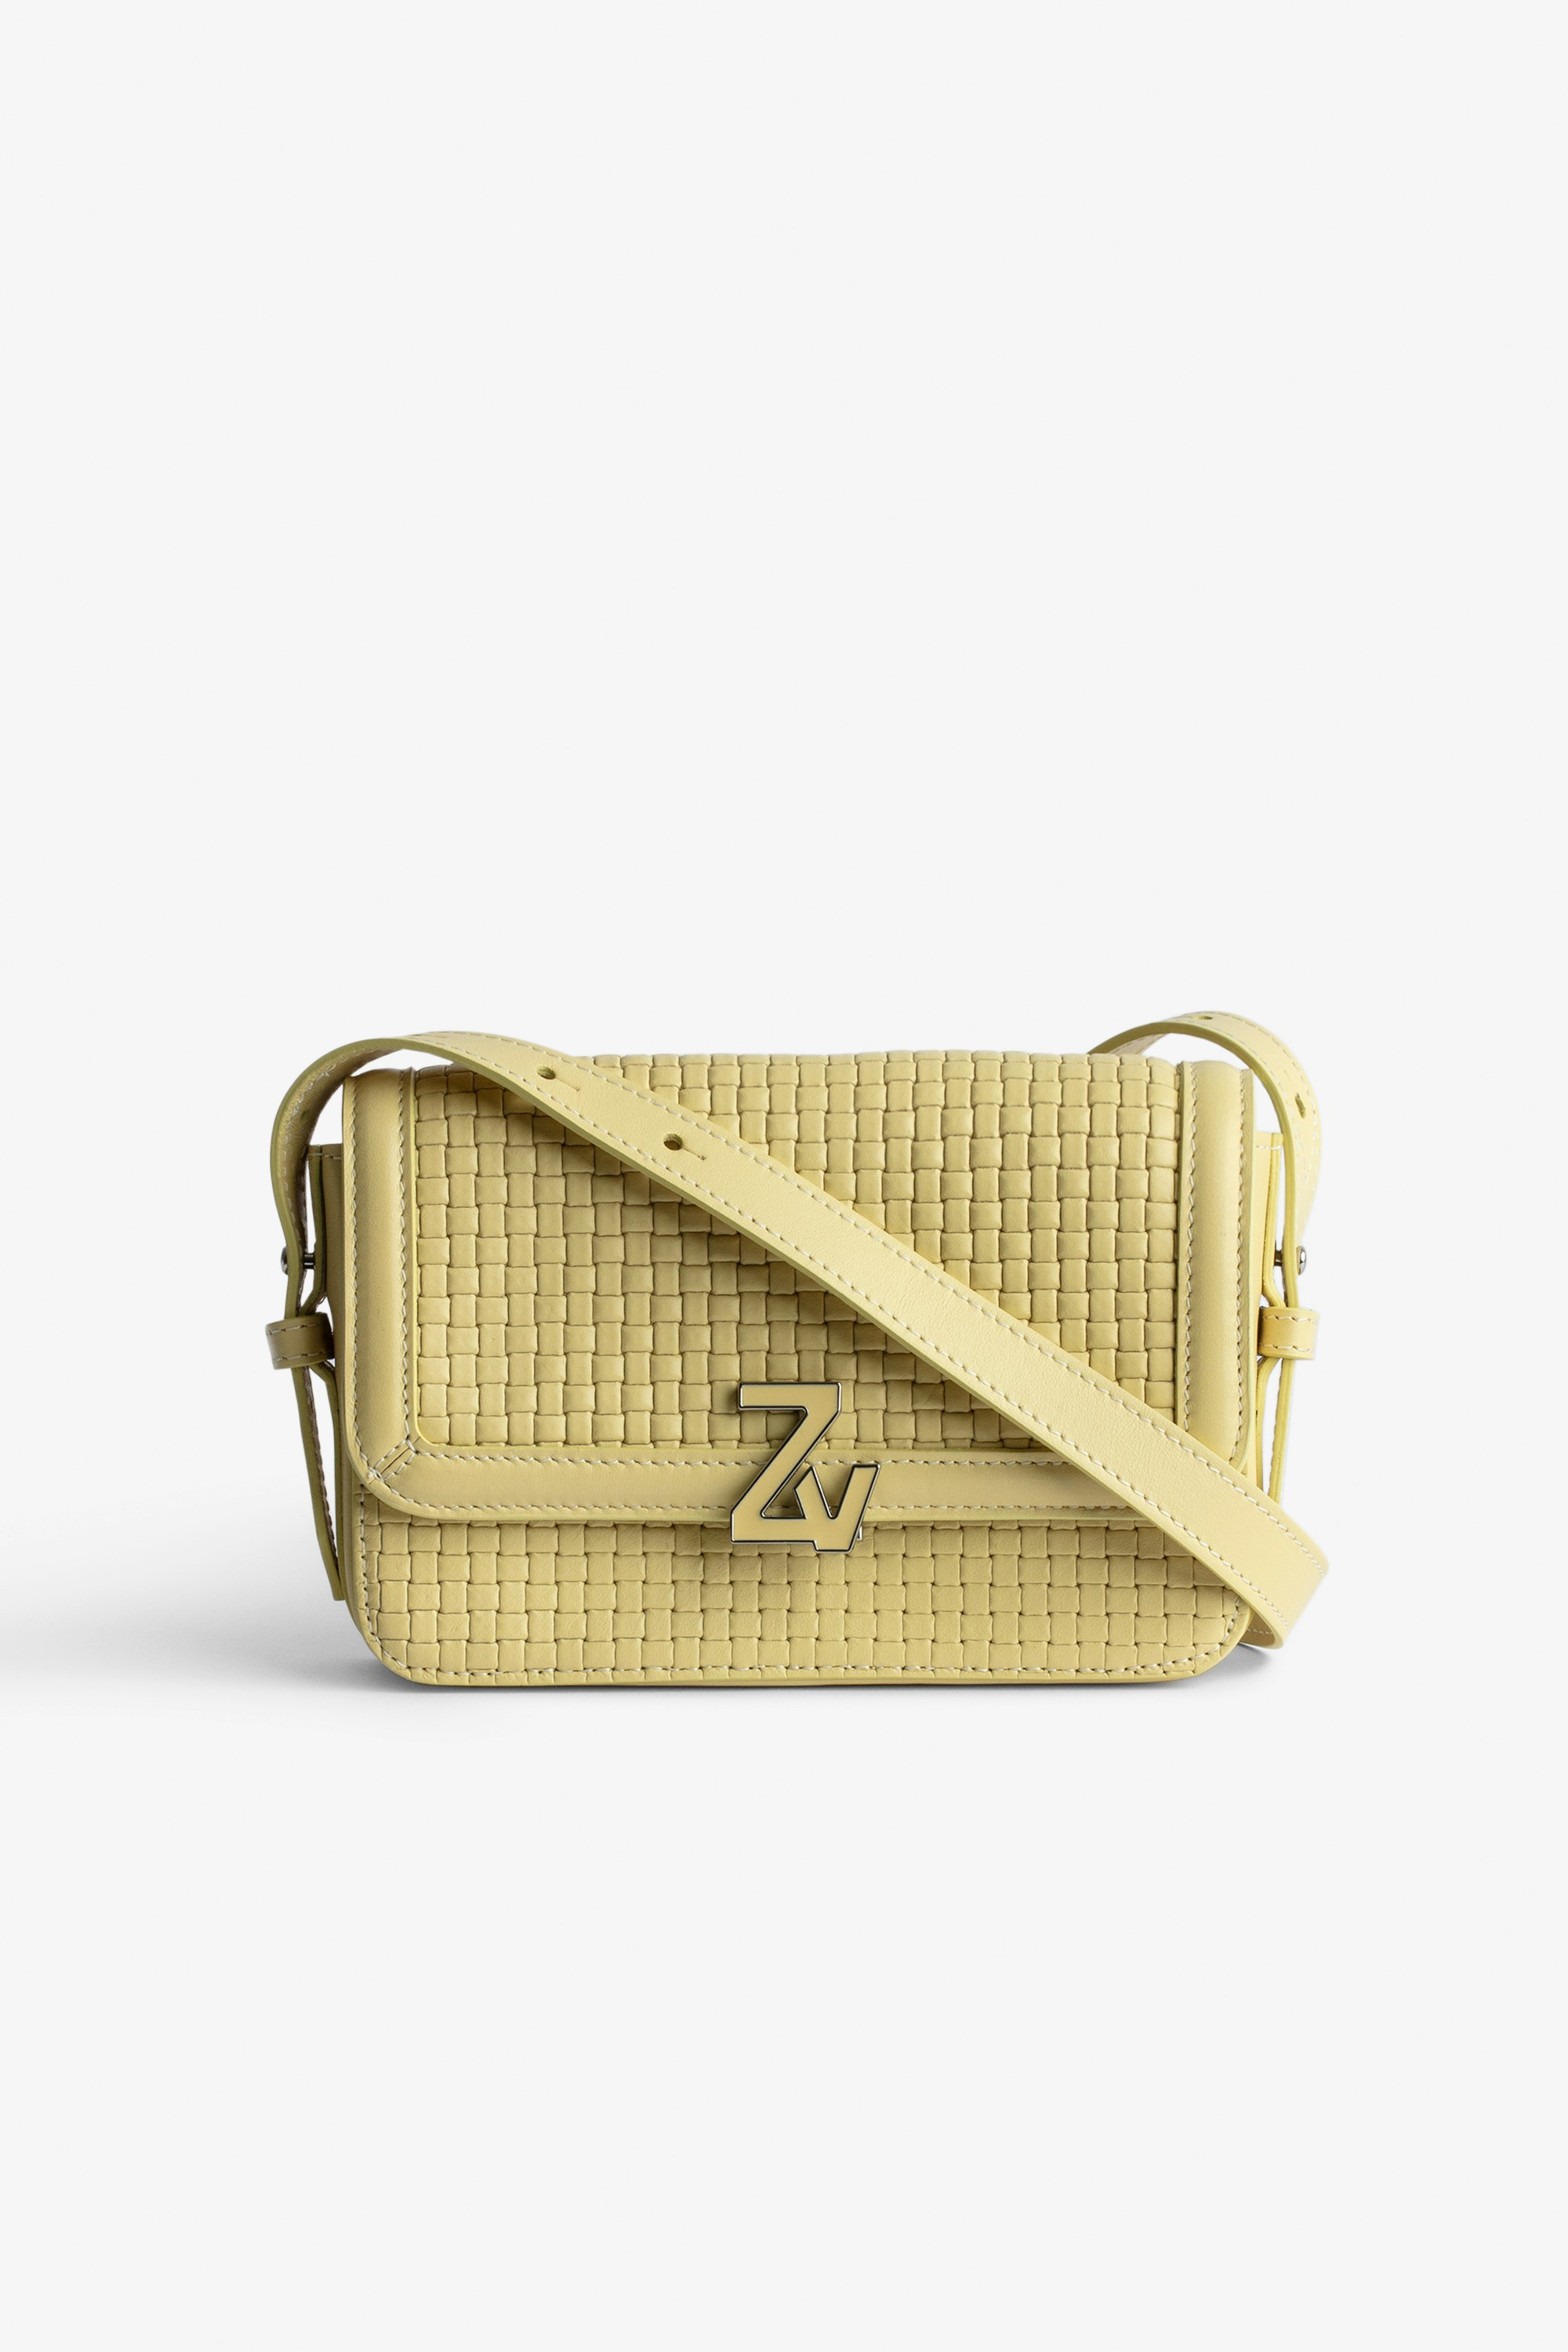 Borsa ZV Initiale Le Mini  Piccola borsa in pelle intrecciata gialla con tracolla e fermaglio ZV - Donna